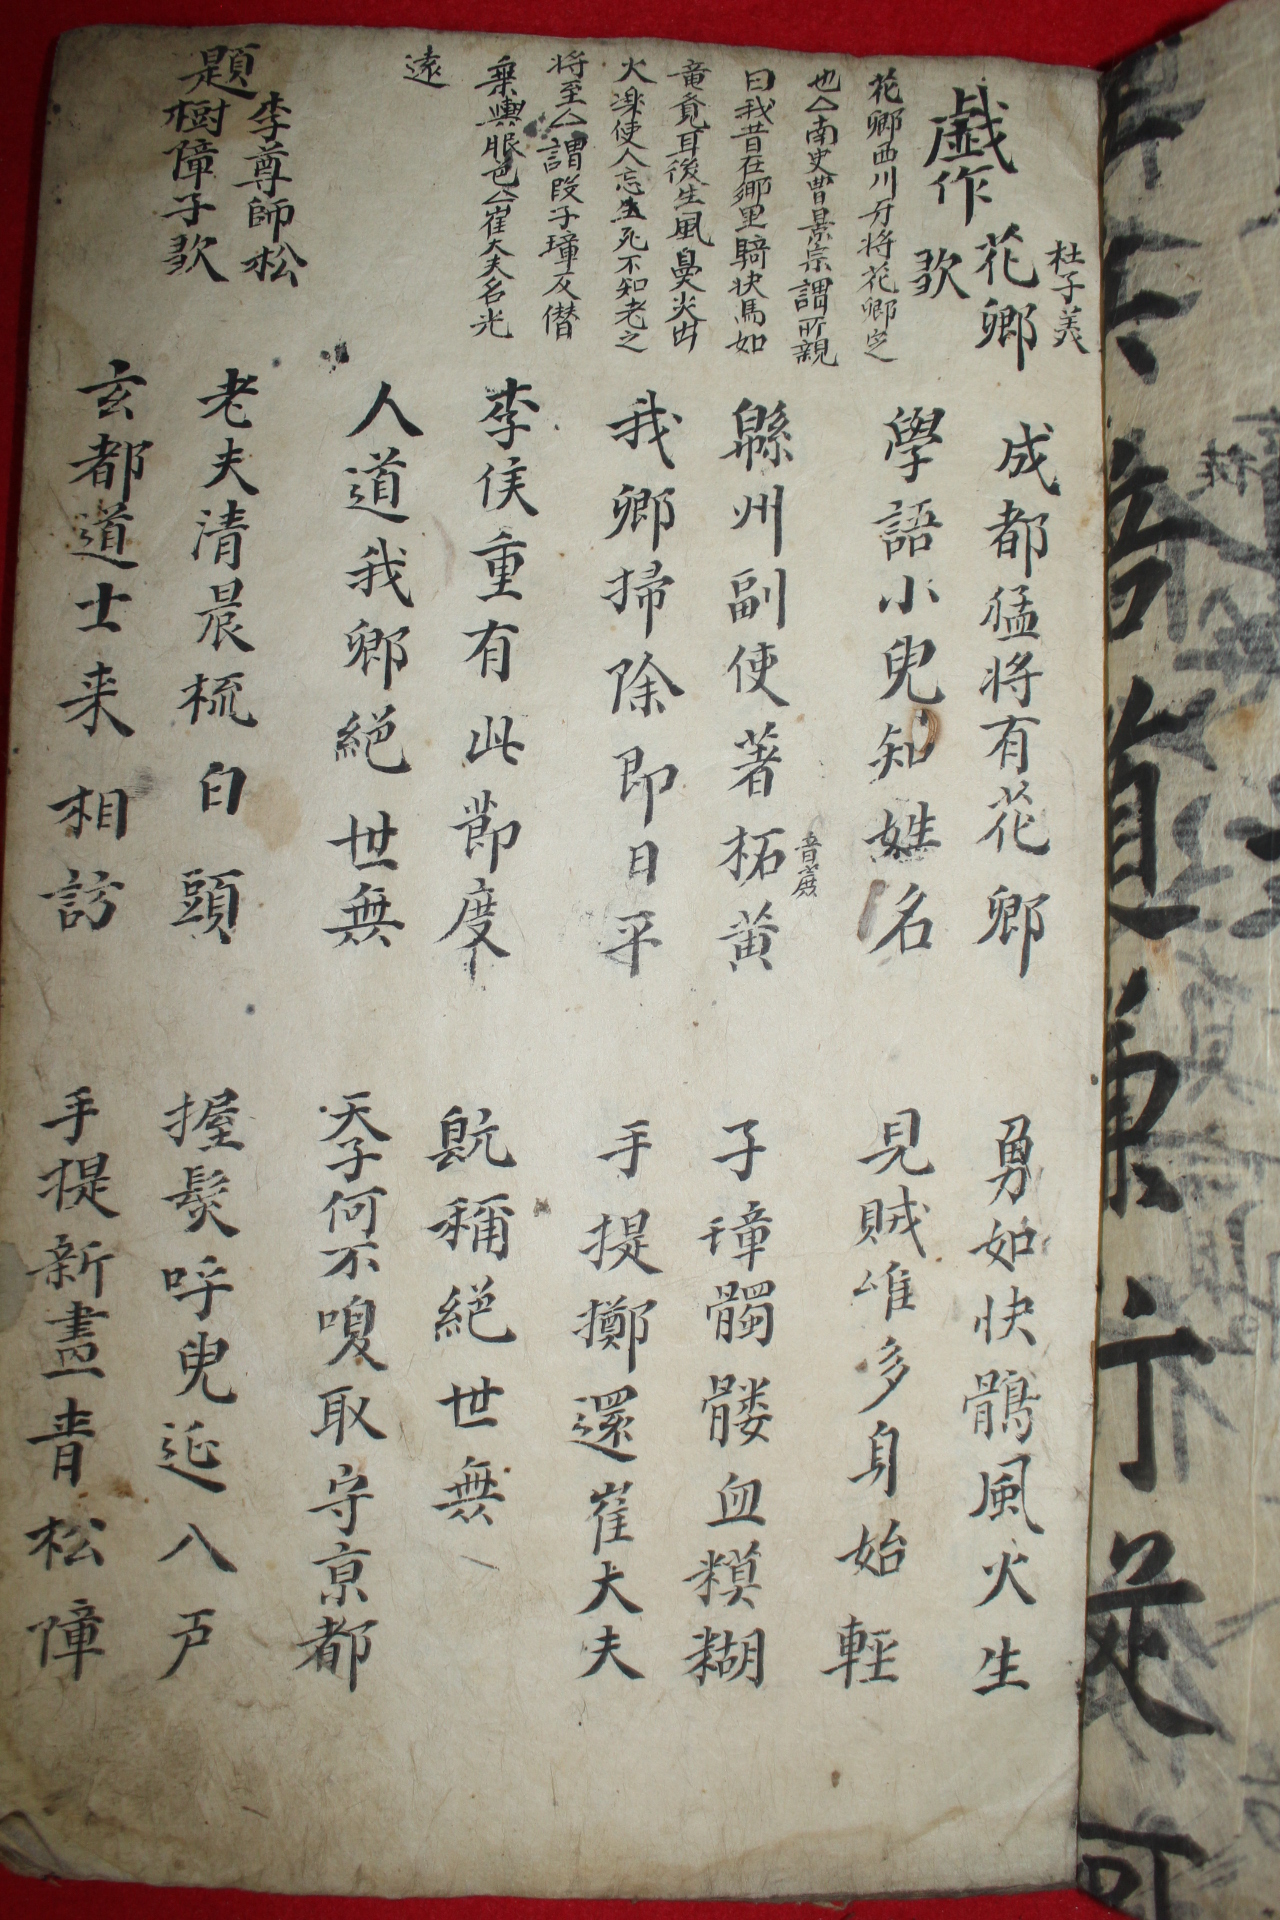 조선시대 필사본 고문(古文)